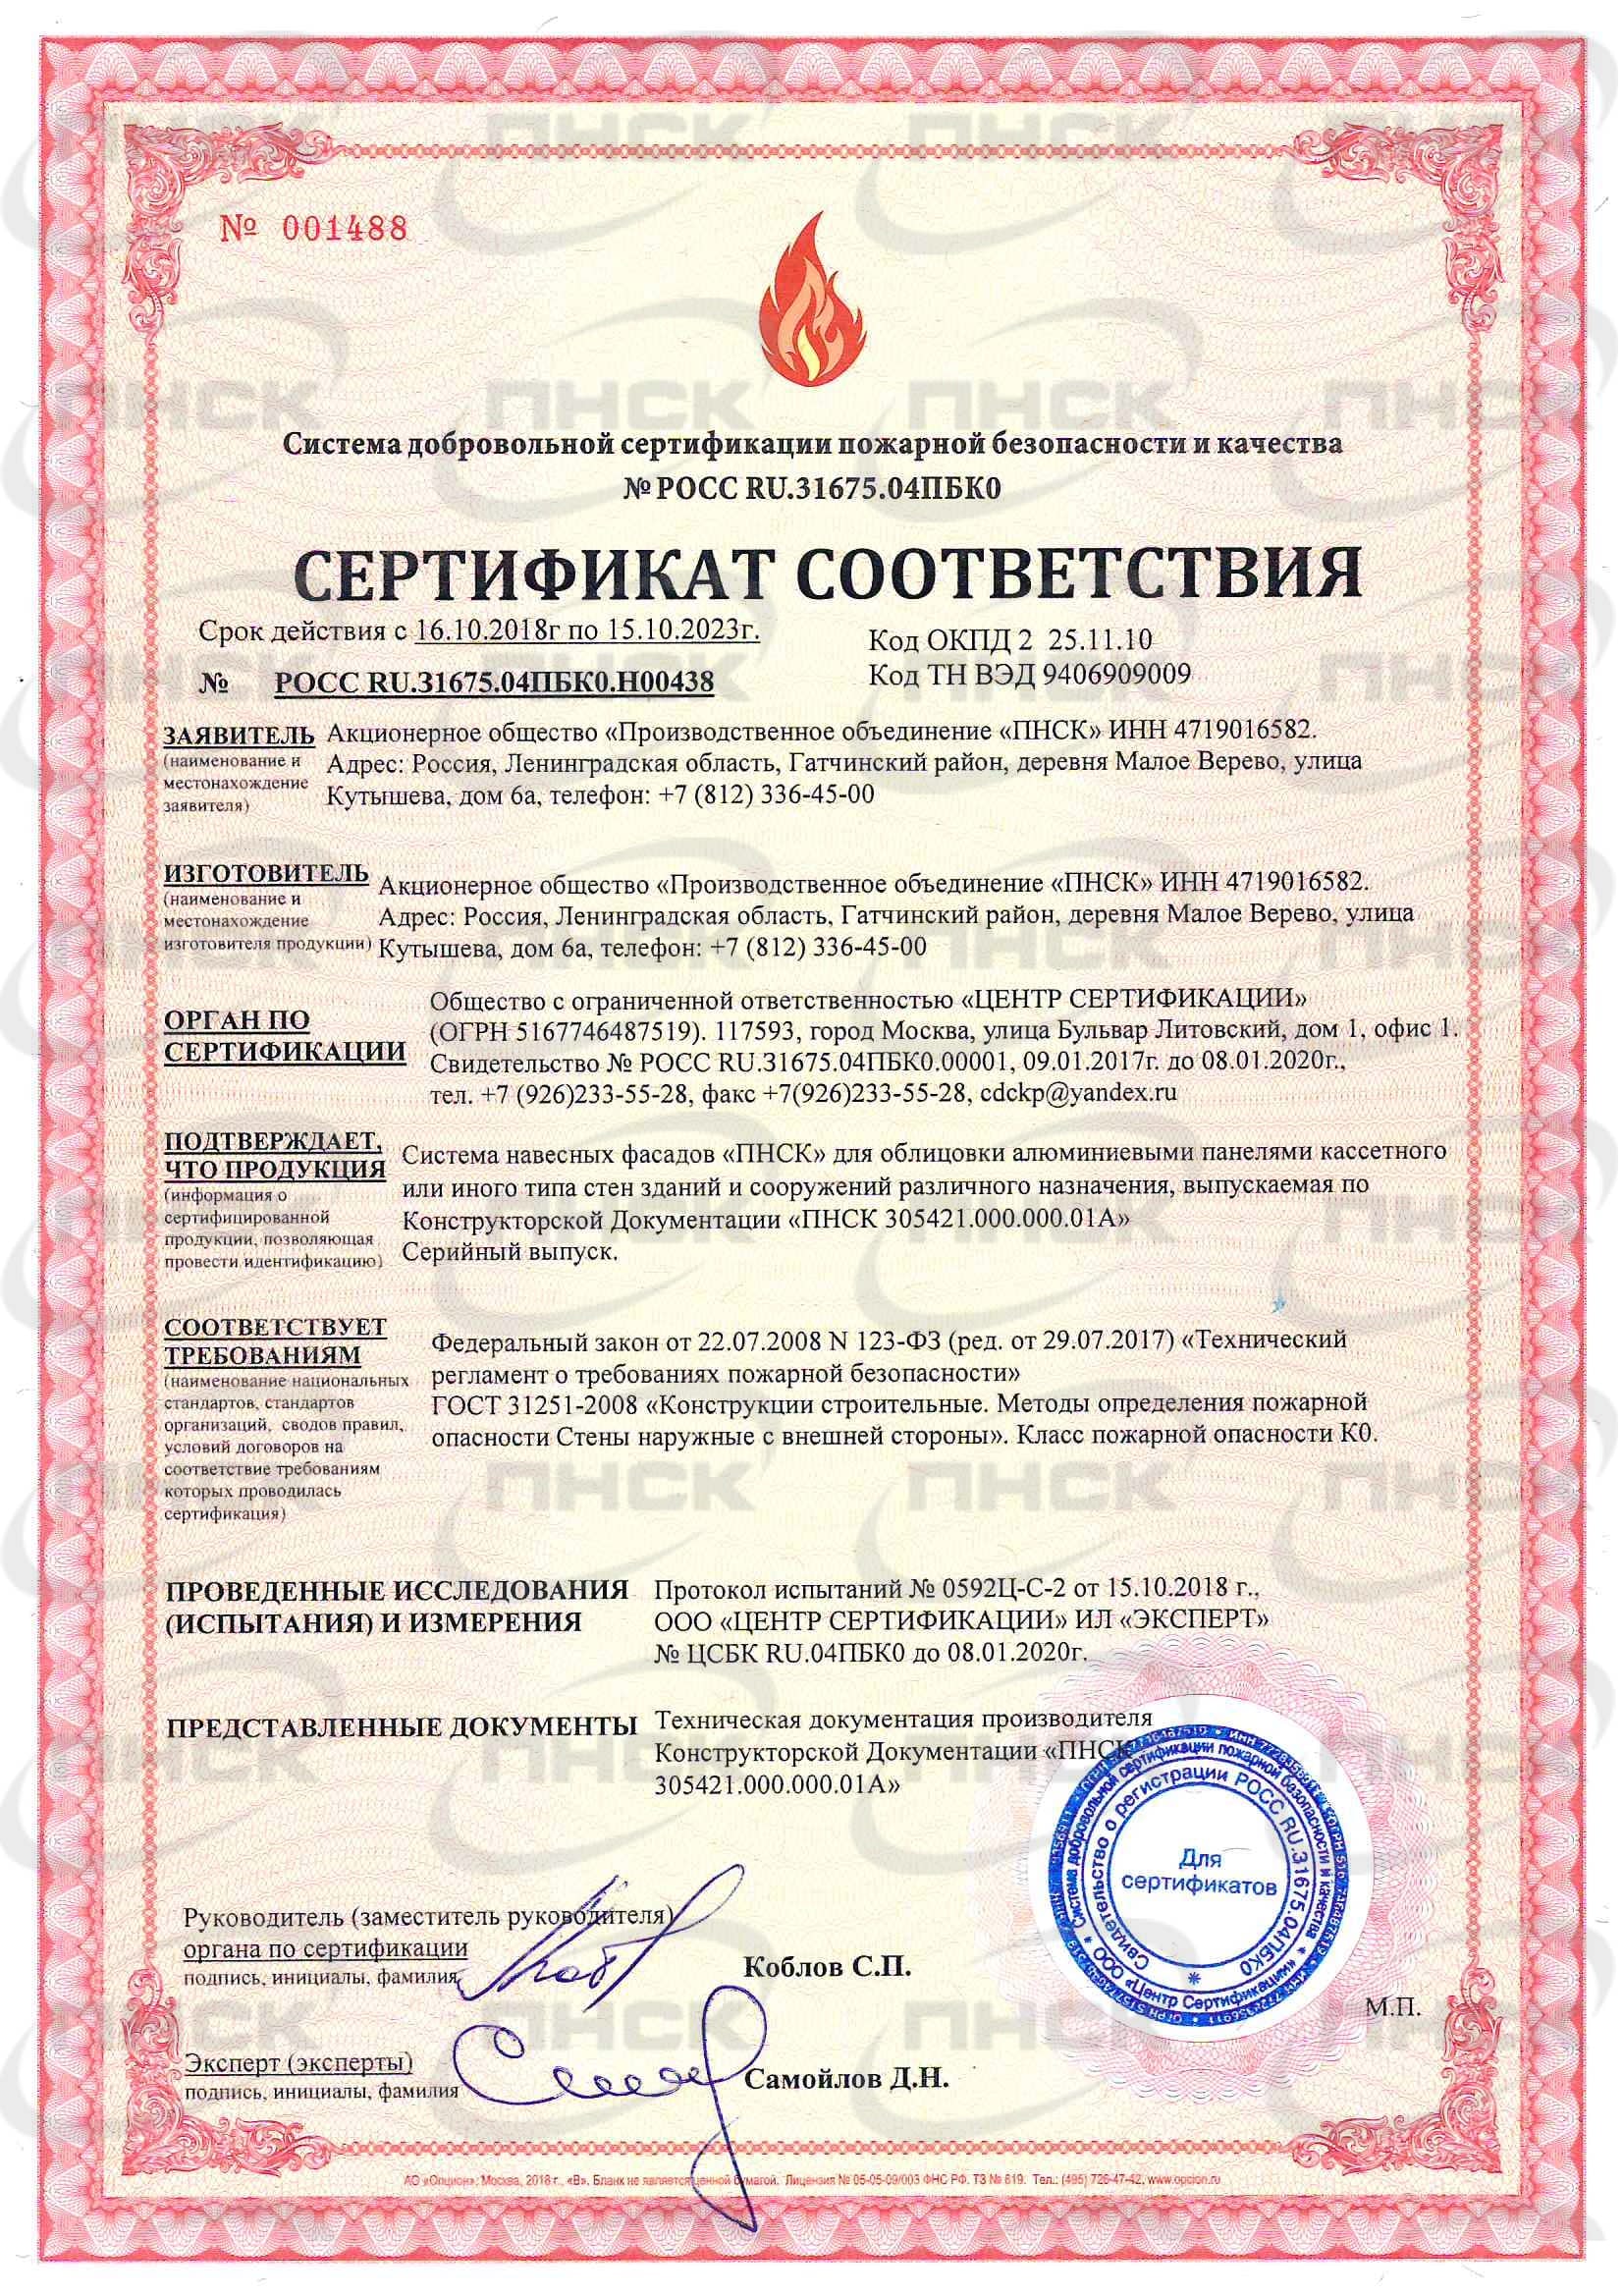 Сертификат соответствия - система навесных фасадов ПНСК